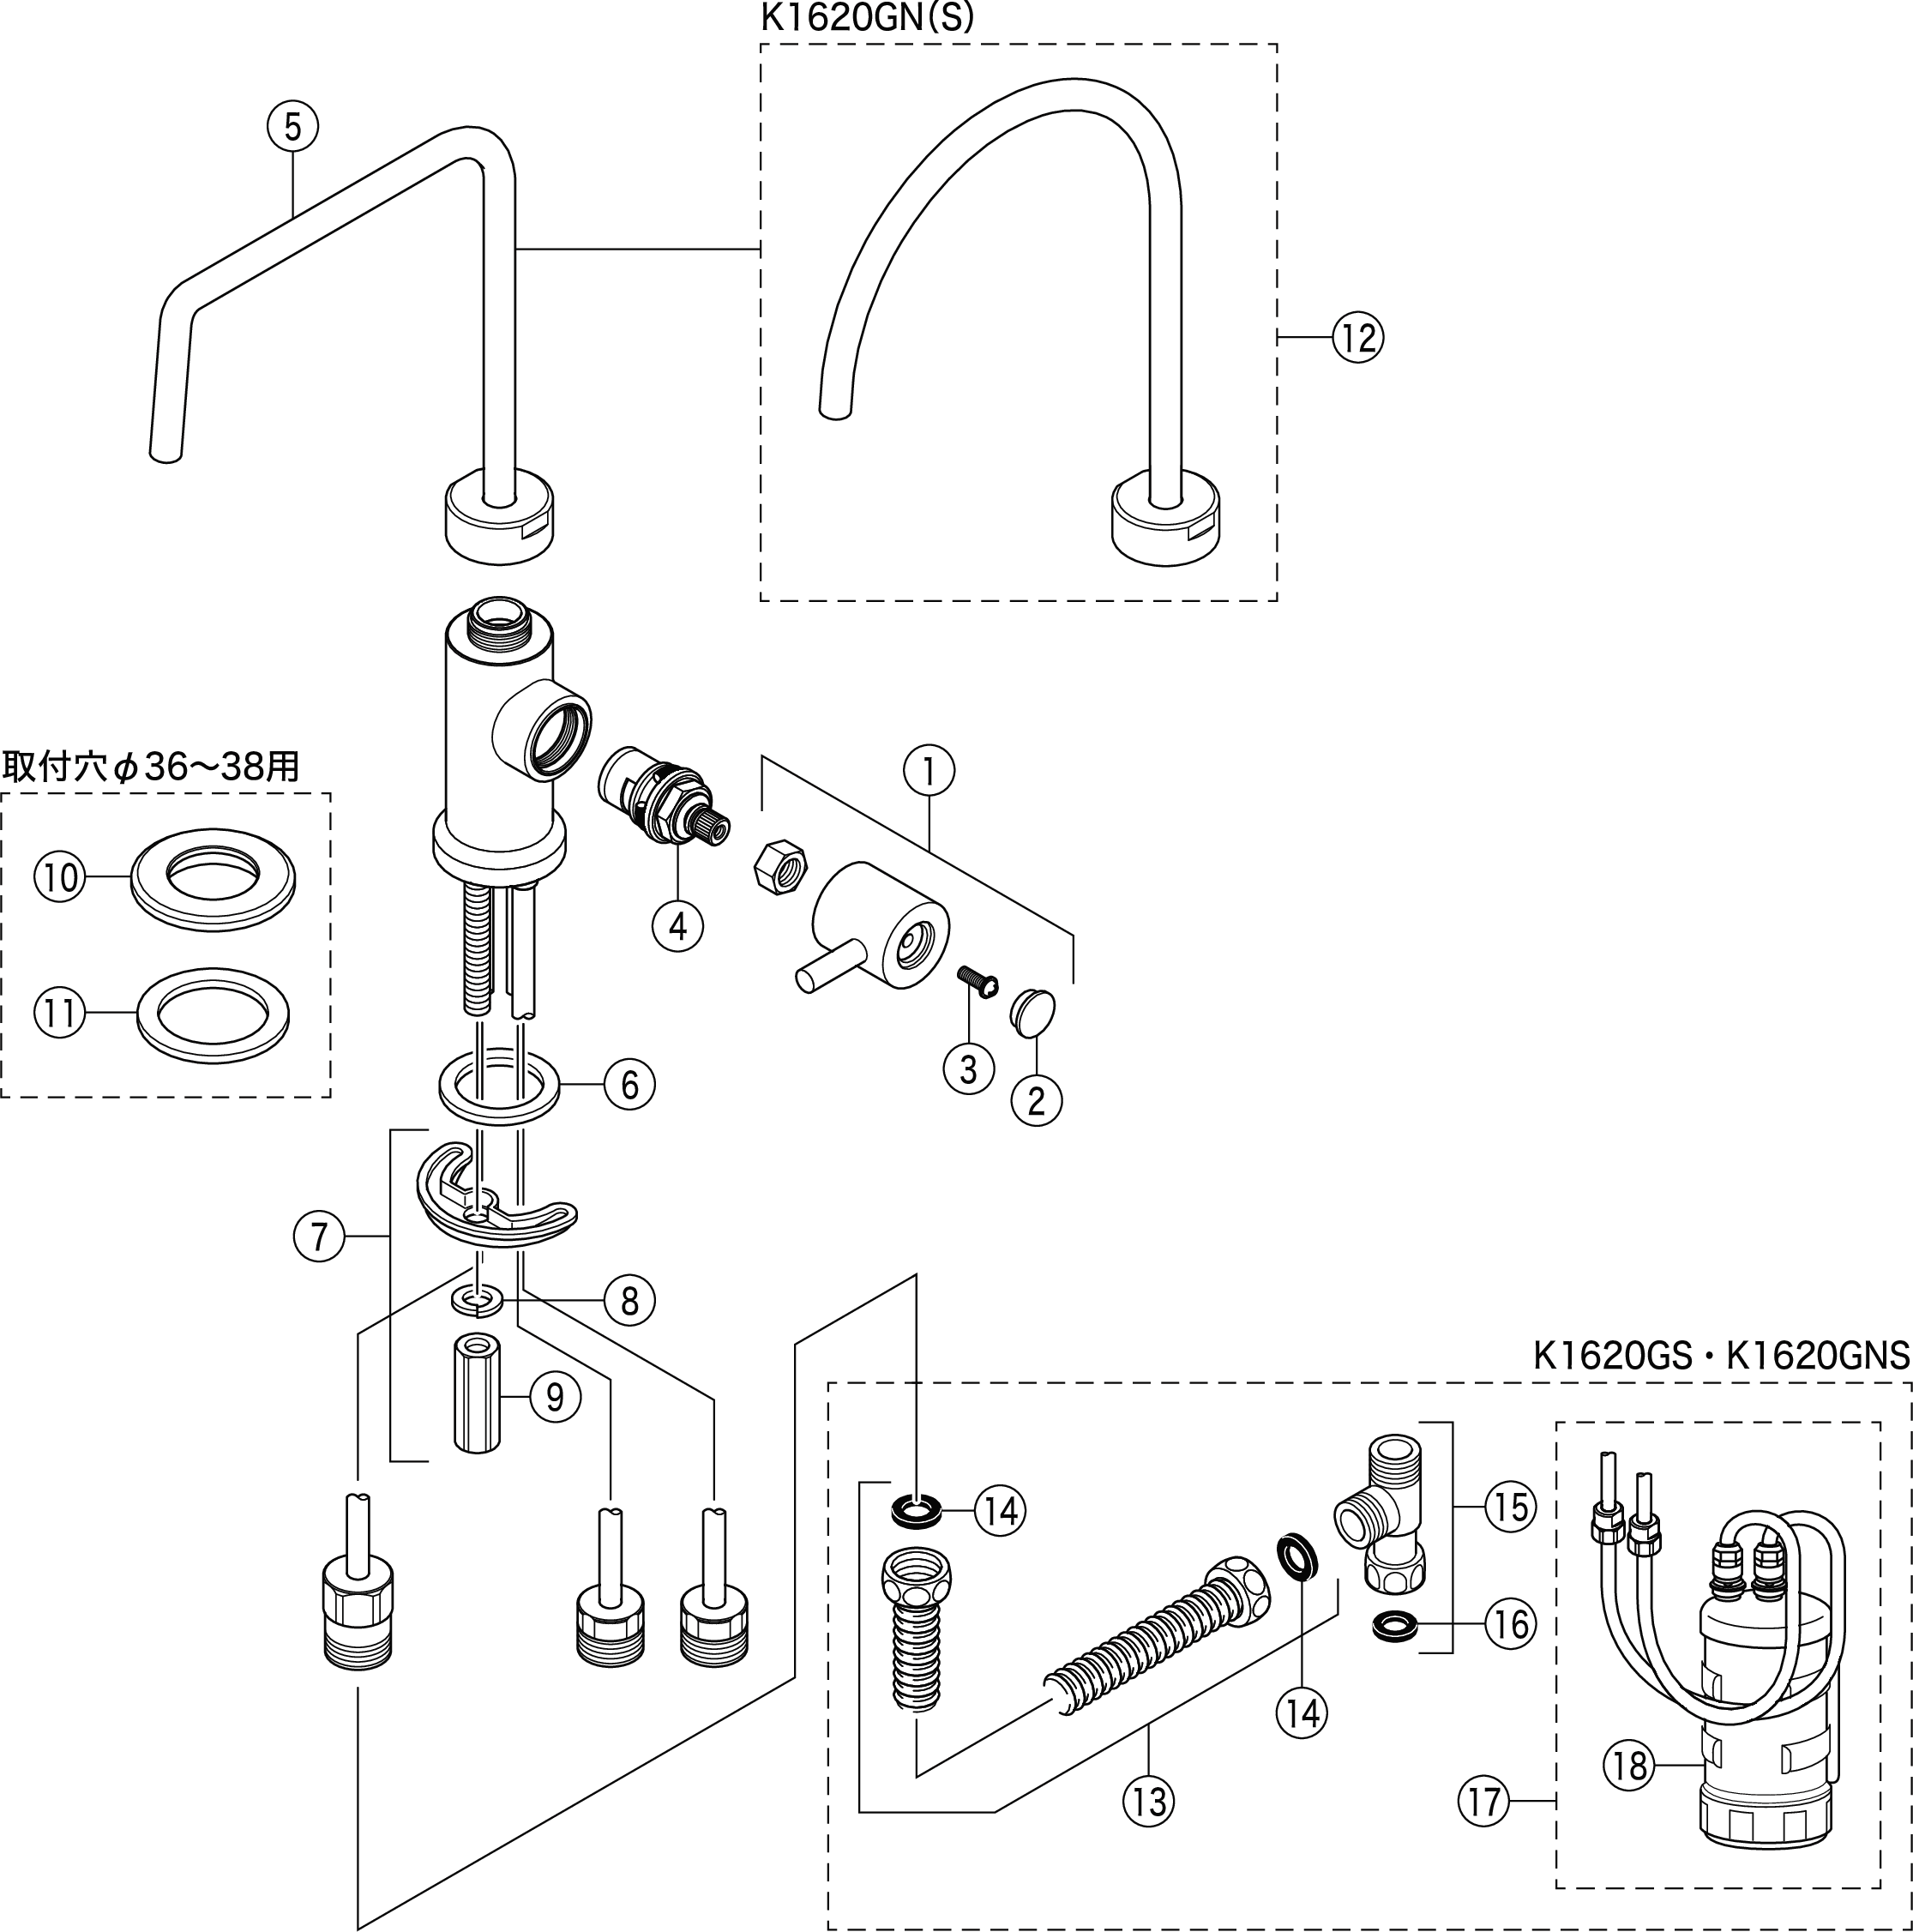 あなたにおすすめの商品 KVK キッチン用浄水器接続専用水栓 K1620GN